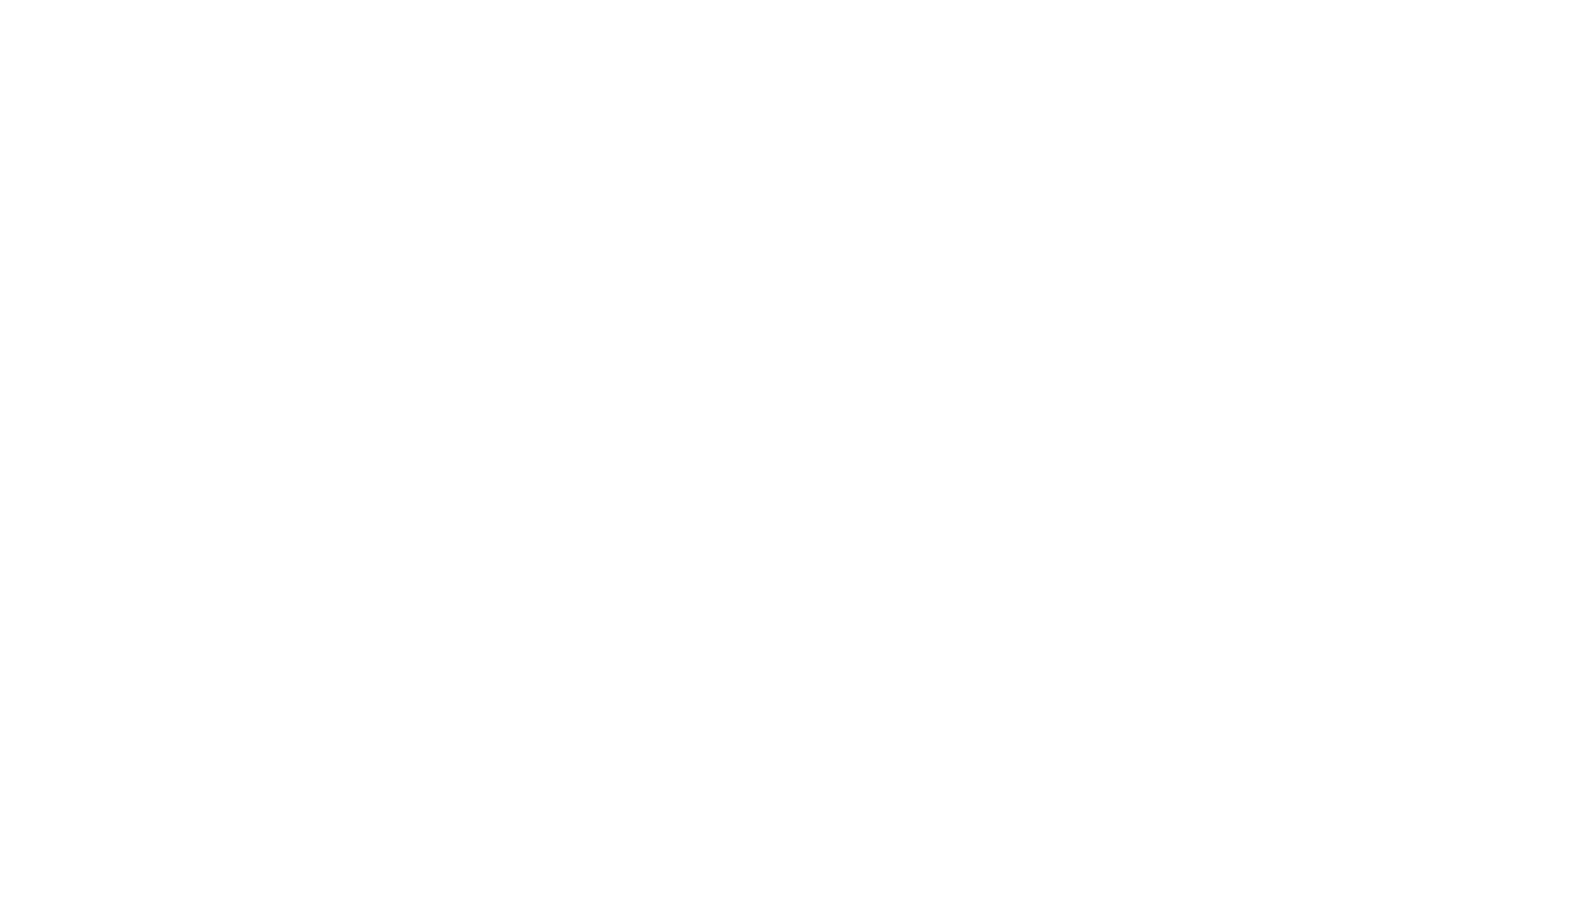 Dog salon & hotel Ragdoll